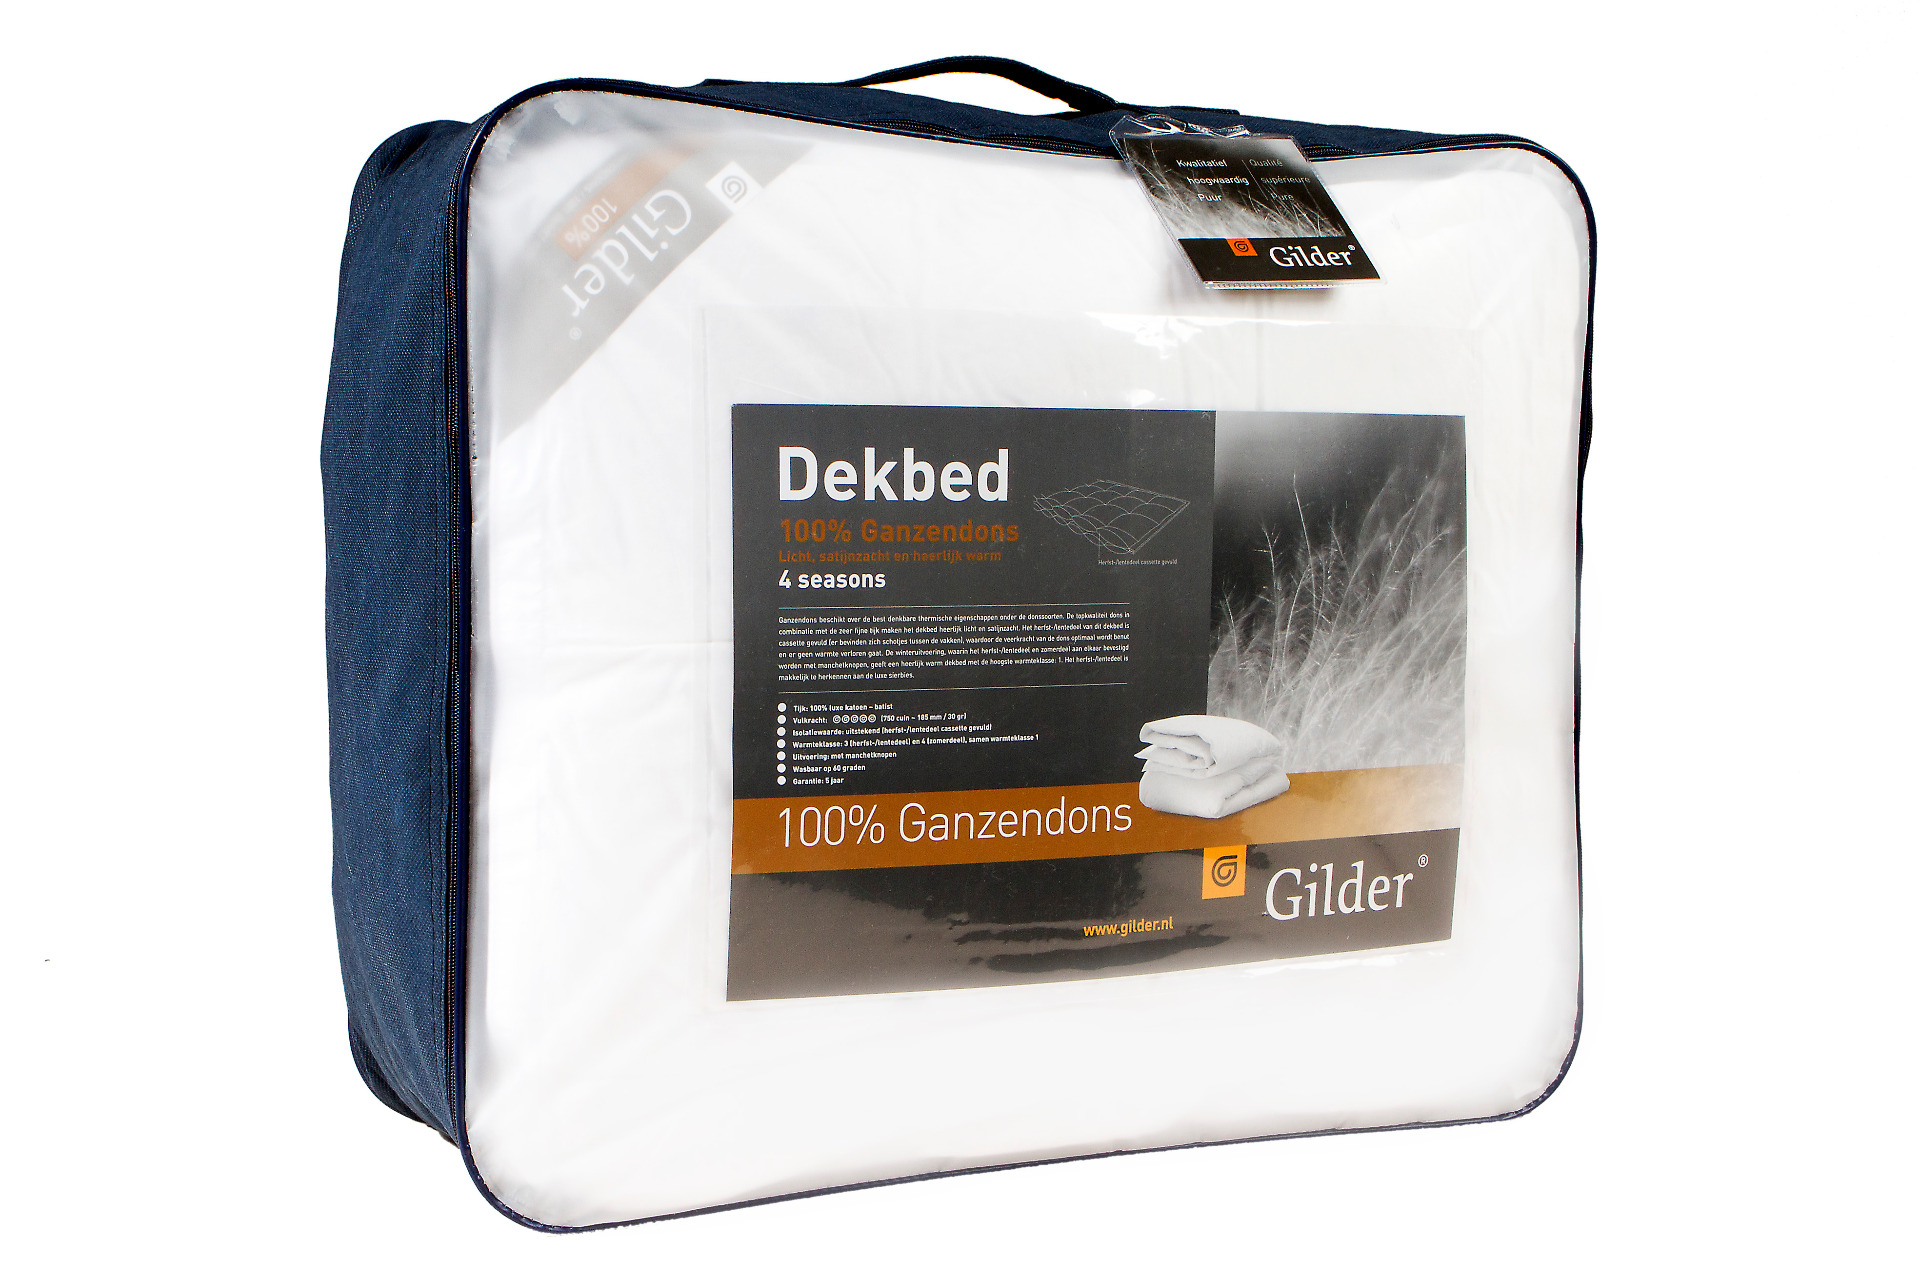 Enkel dekbed Gilder 100% Ganzendons - Top comfort!